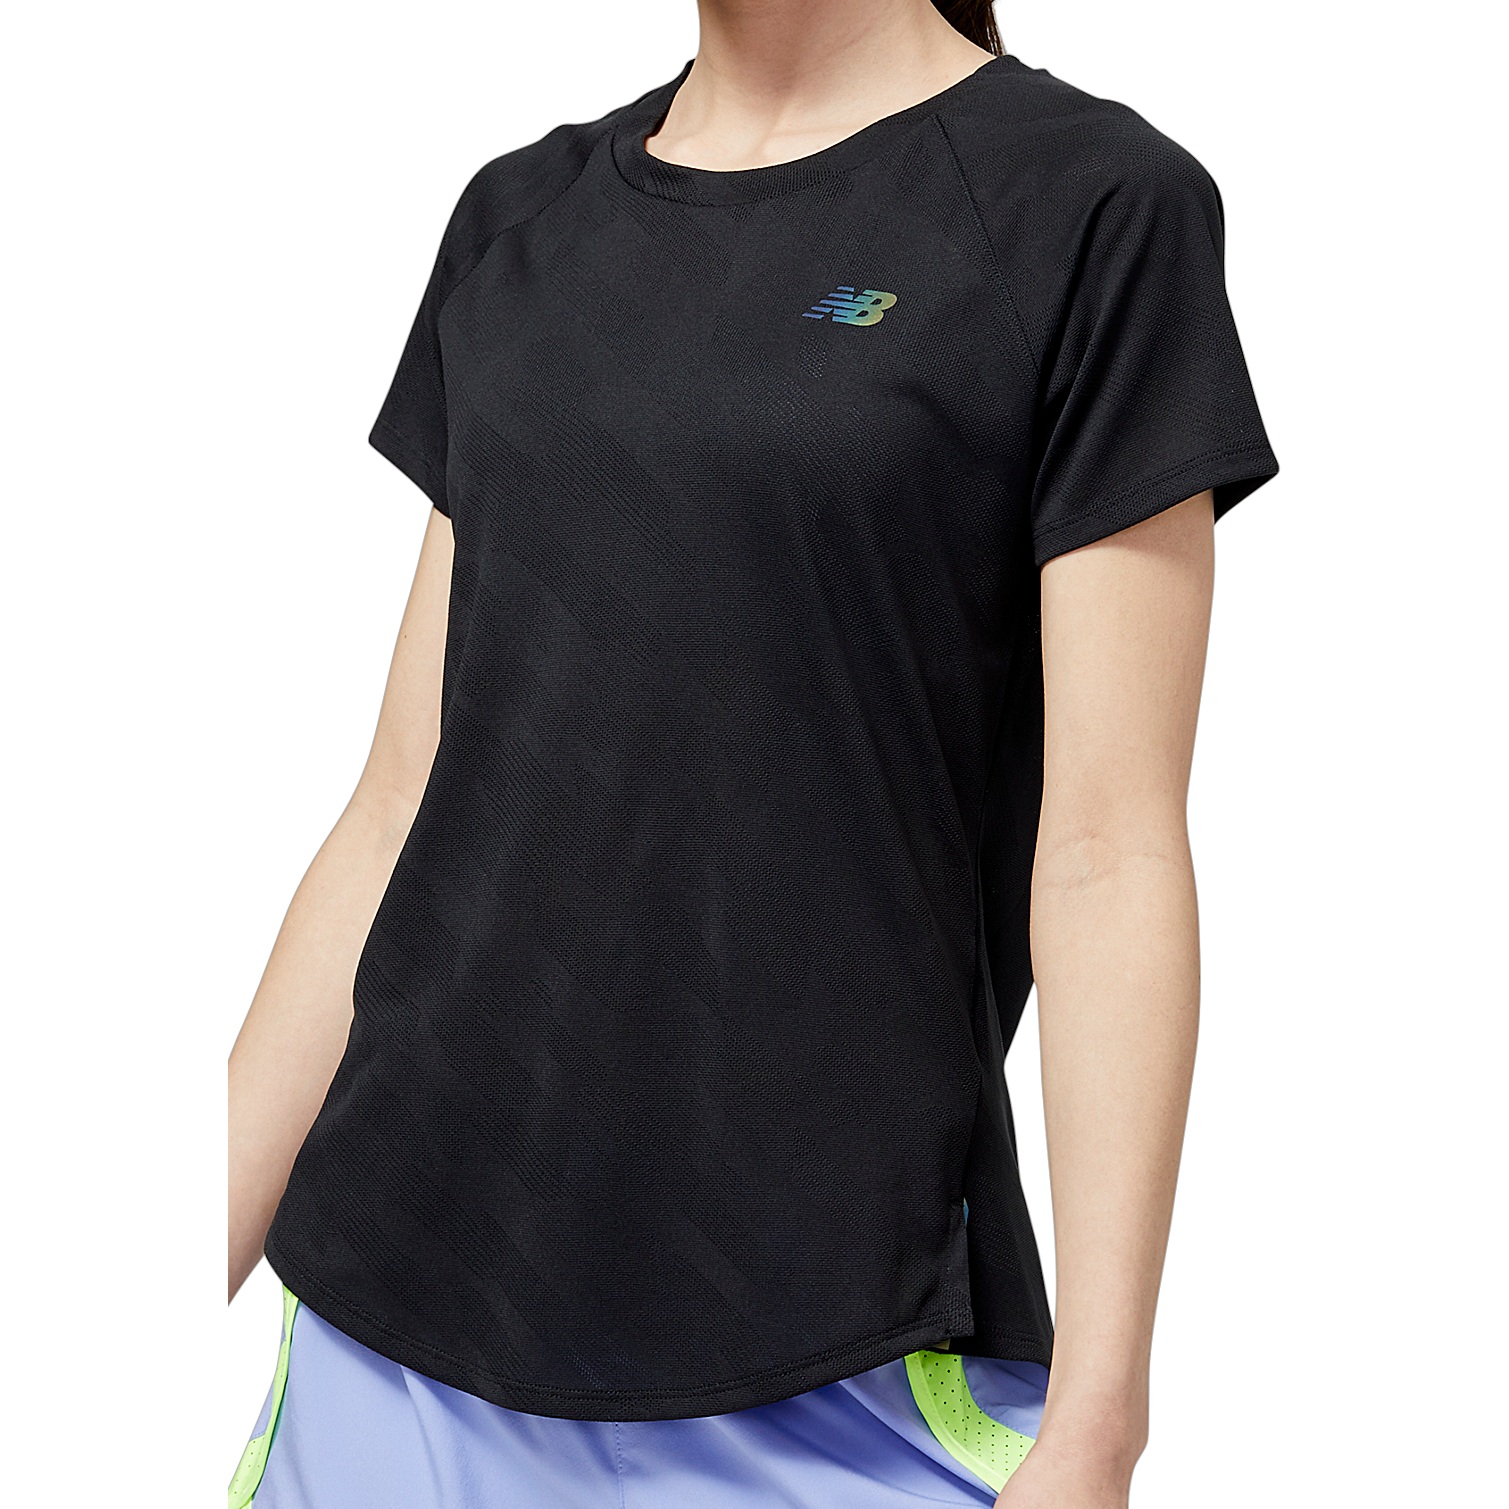 Productfoto van New Balance Q Speed Jacquard Hardloopshirt Dames - Zwart